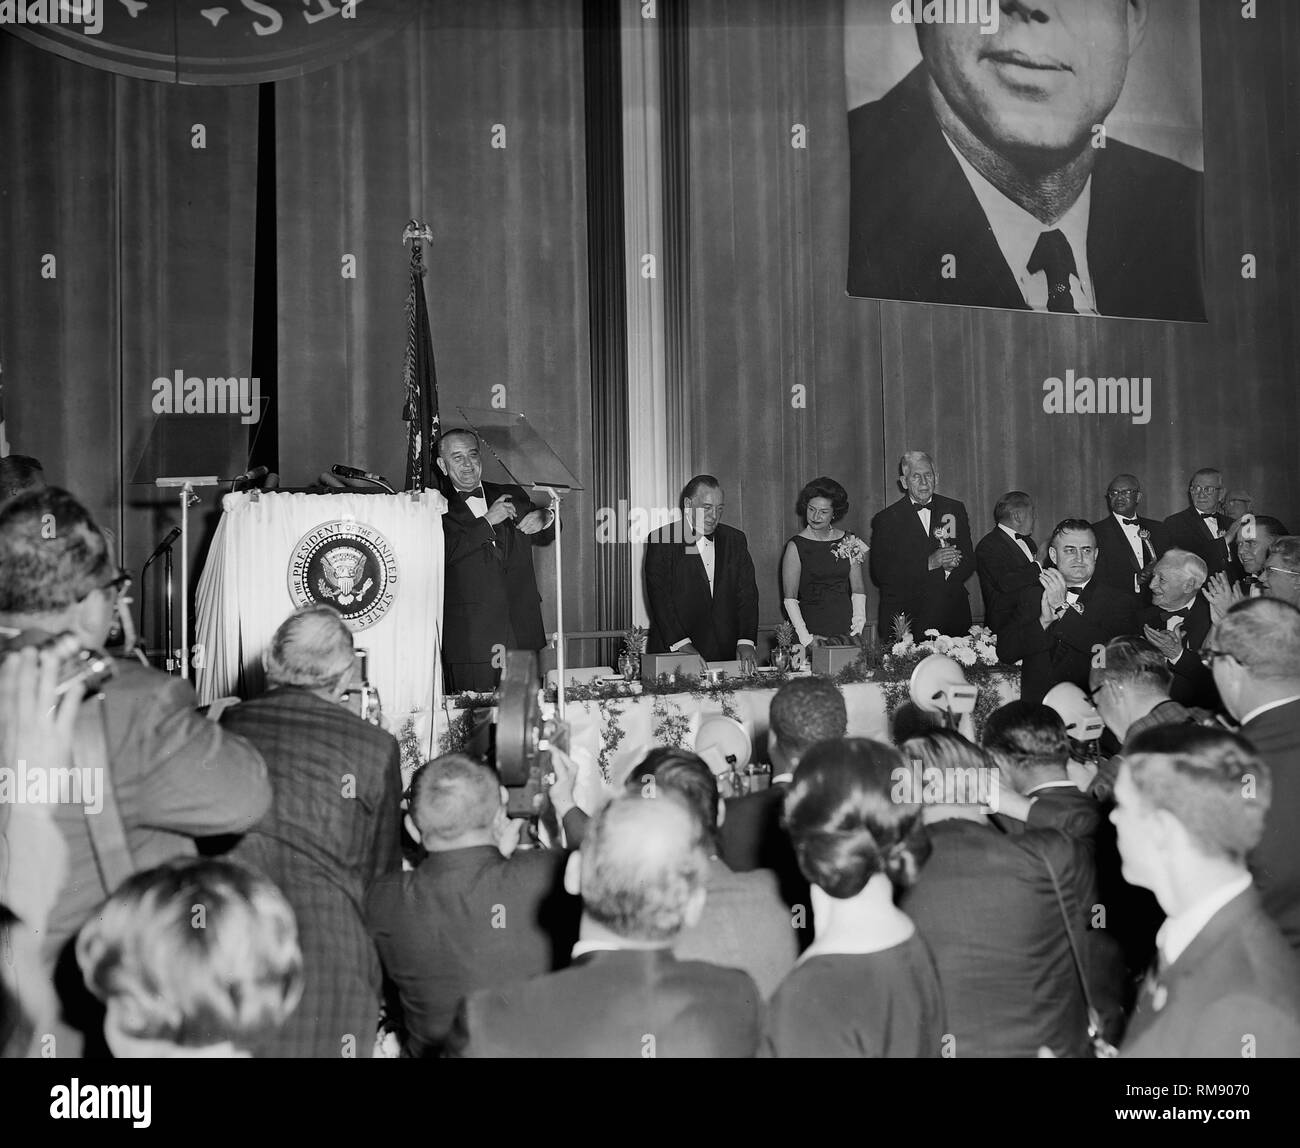 Le Président Lyndon Johnson est applaudie après un discours à Chicago dans le cadre d'un grand portrait de JFK, ca. 1964. Banque D'Images